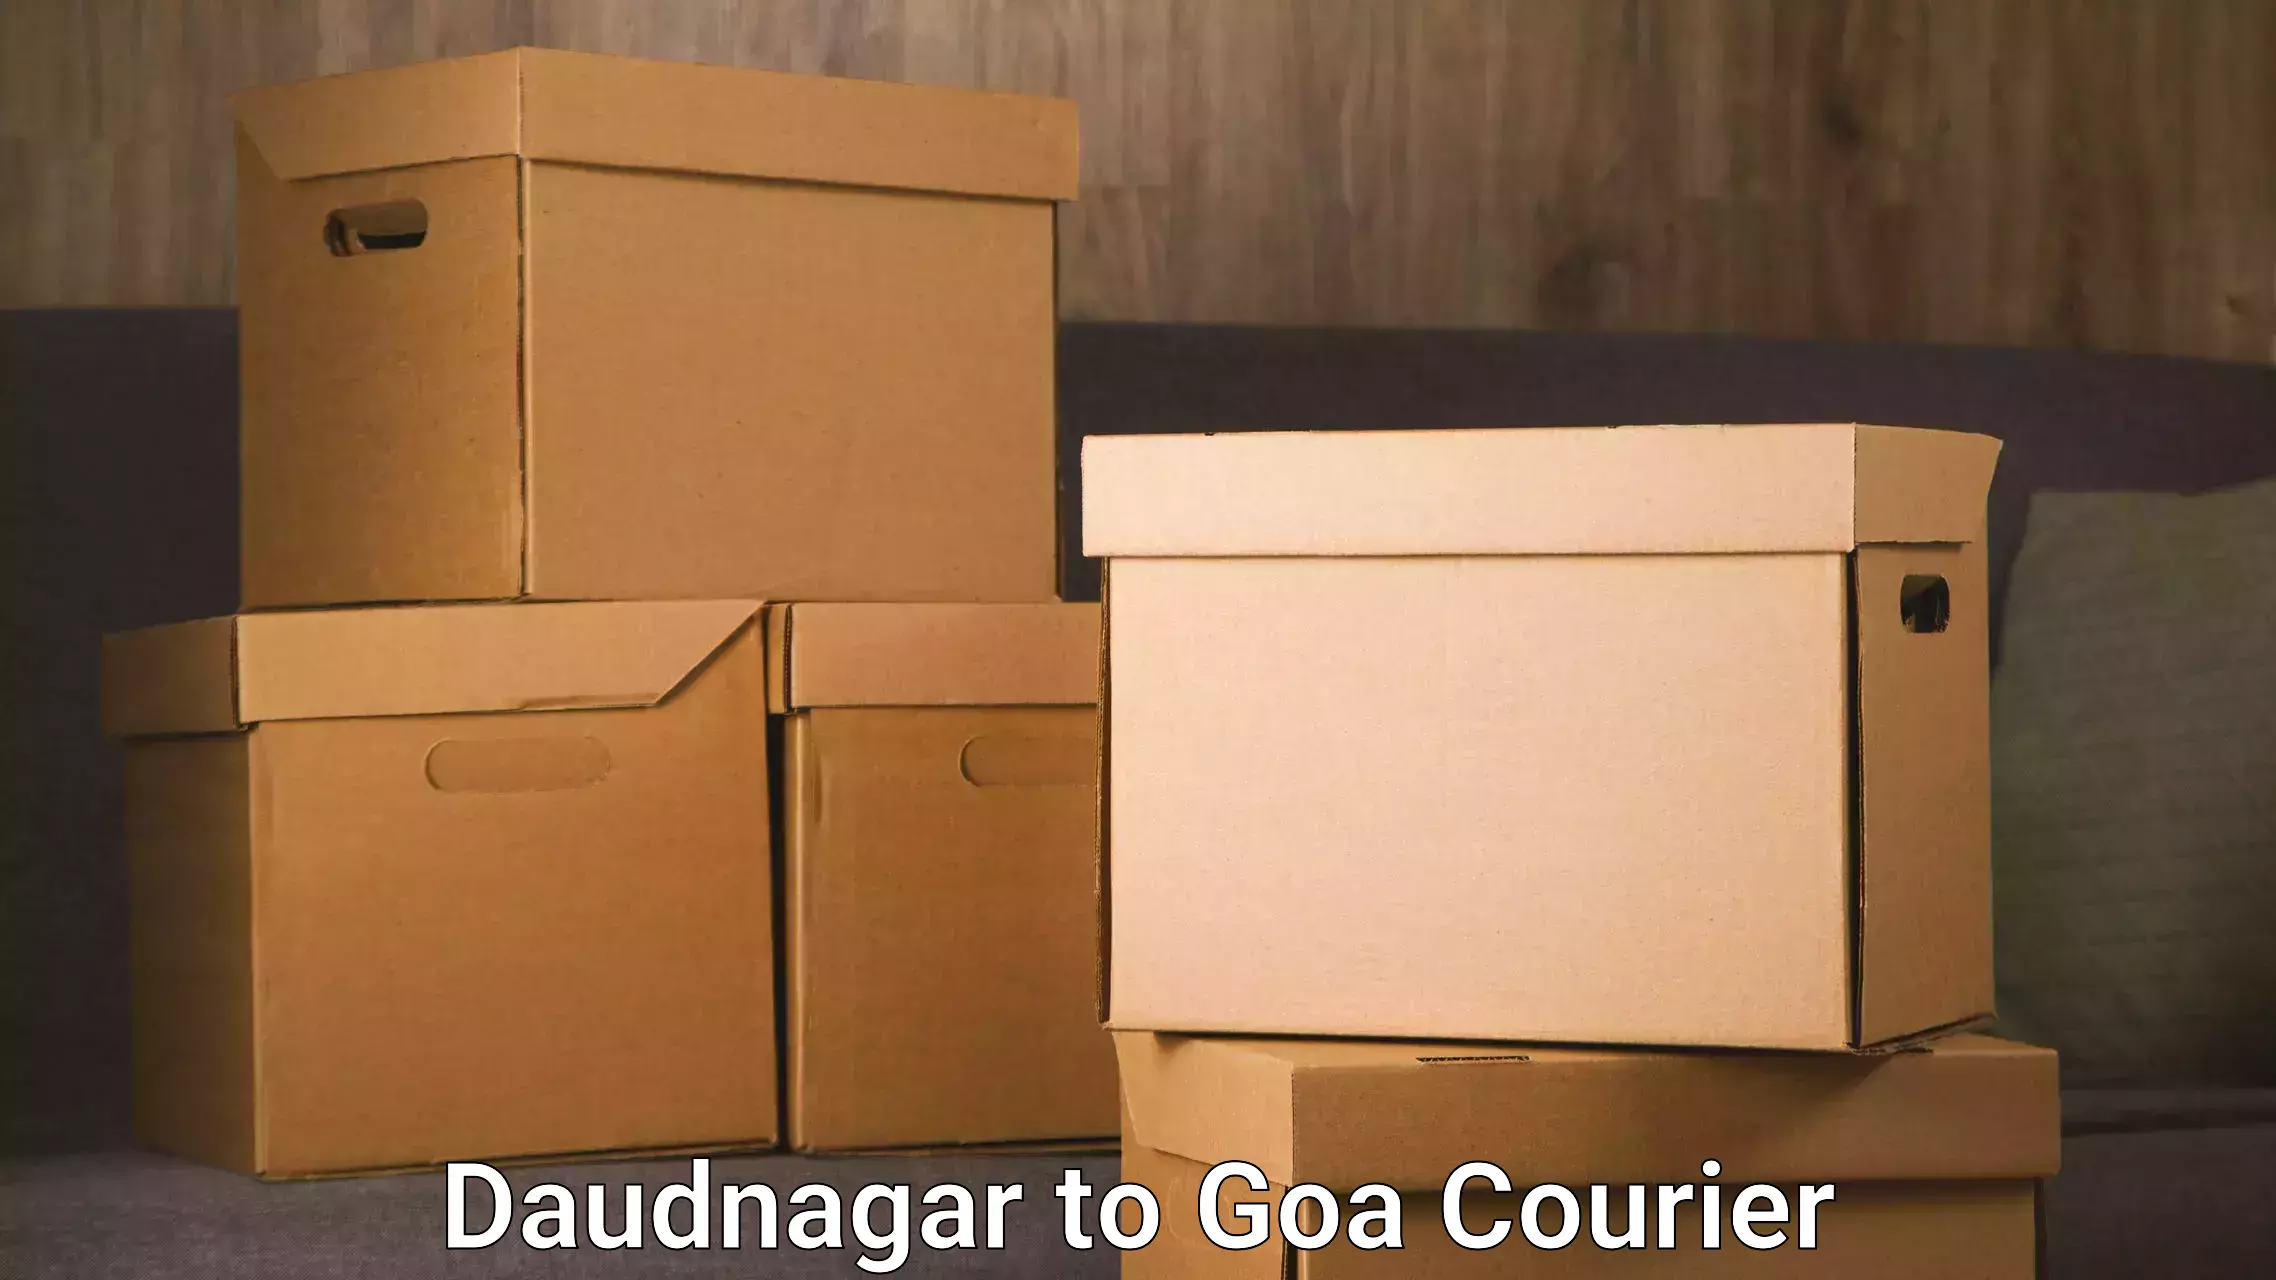 Moving and handling services Daudnagar to Ponda